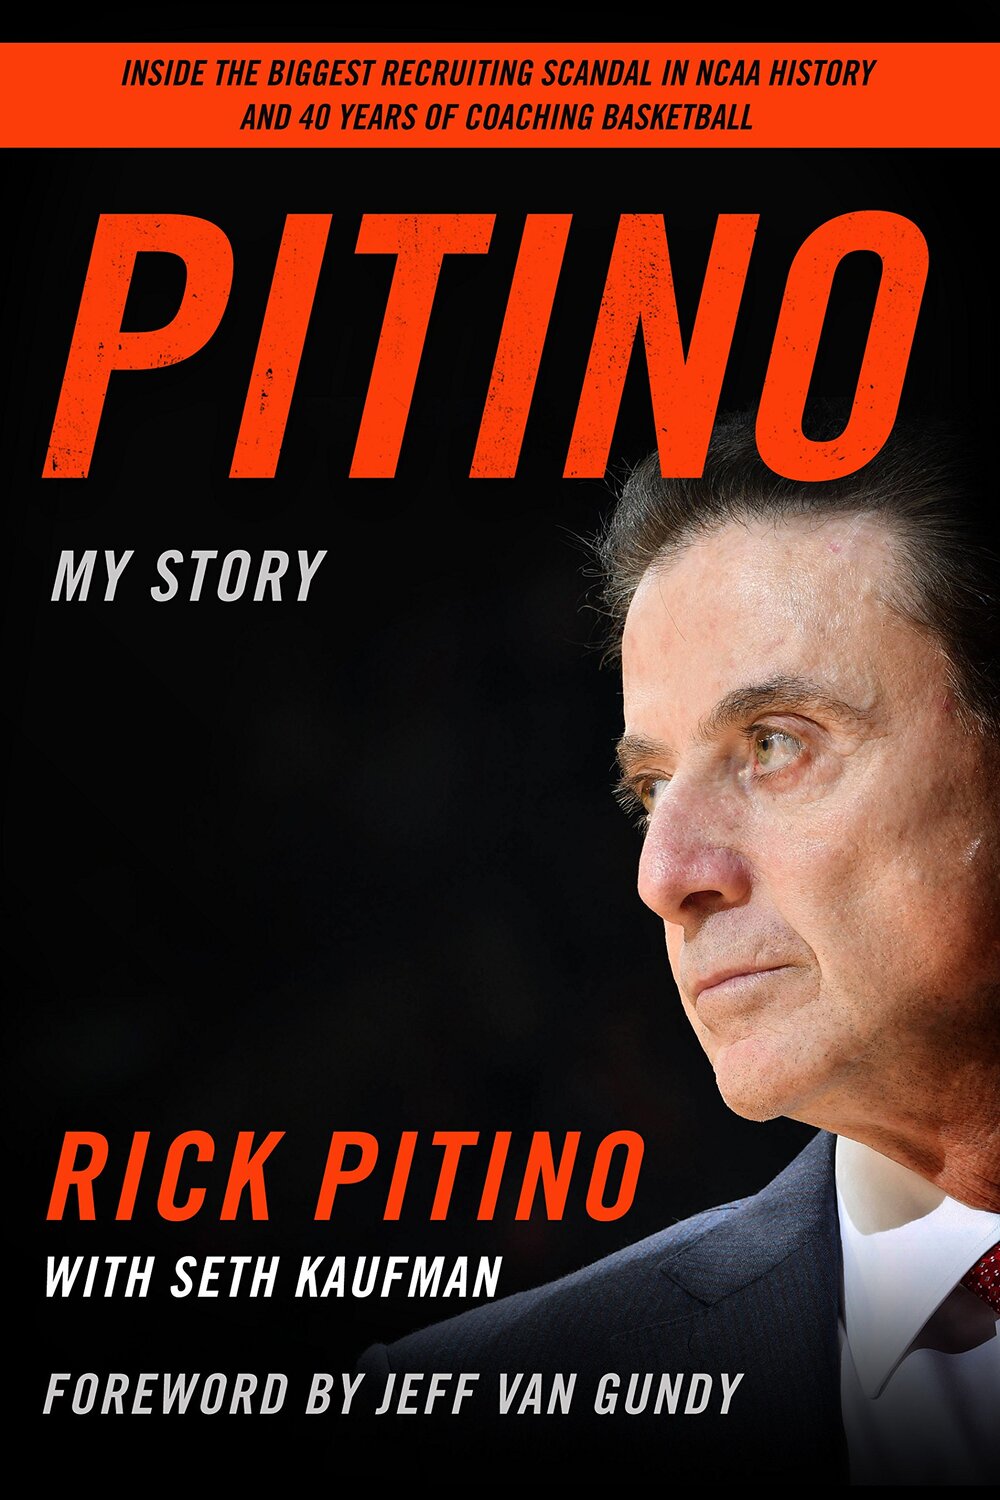 Pitino: My Story by Rick Pitino